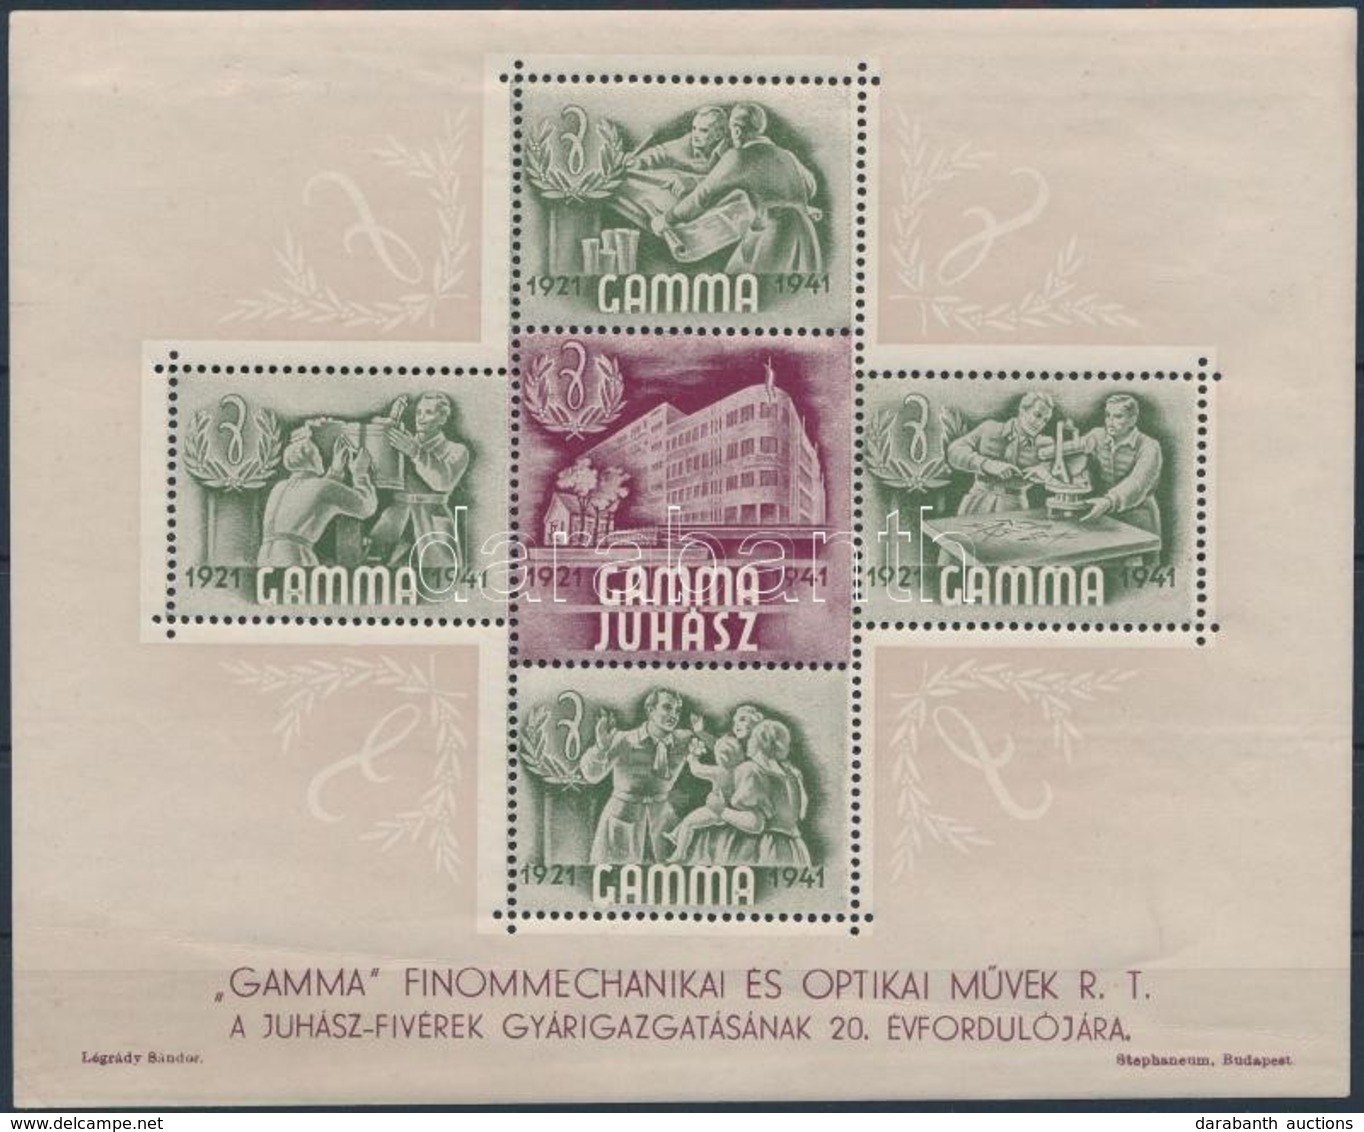 1941 Gamma Levélzáró Blokk - Unclassified